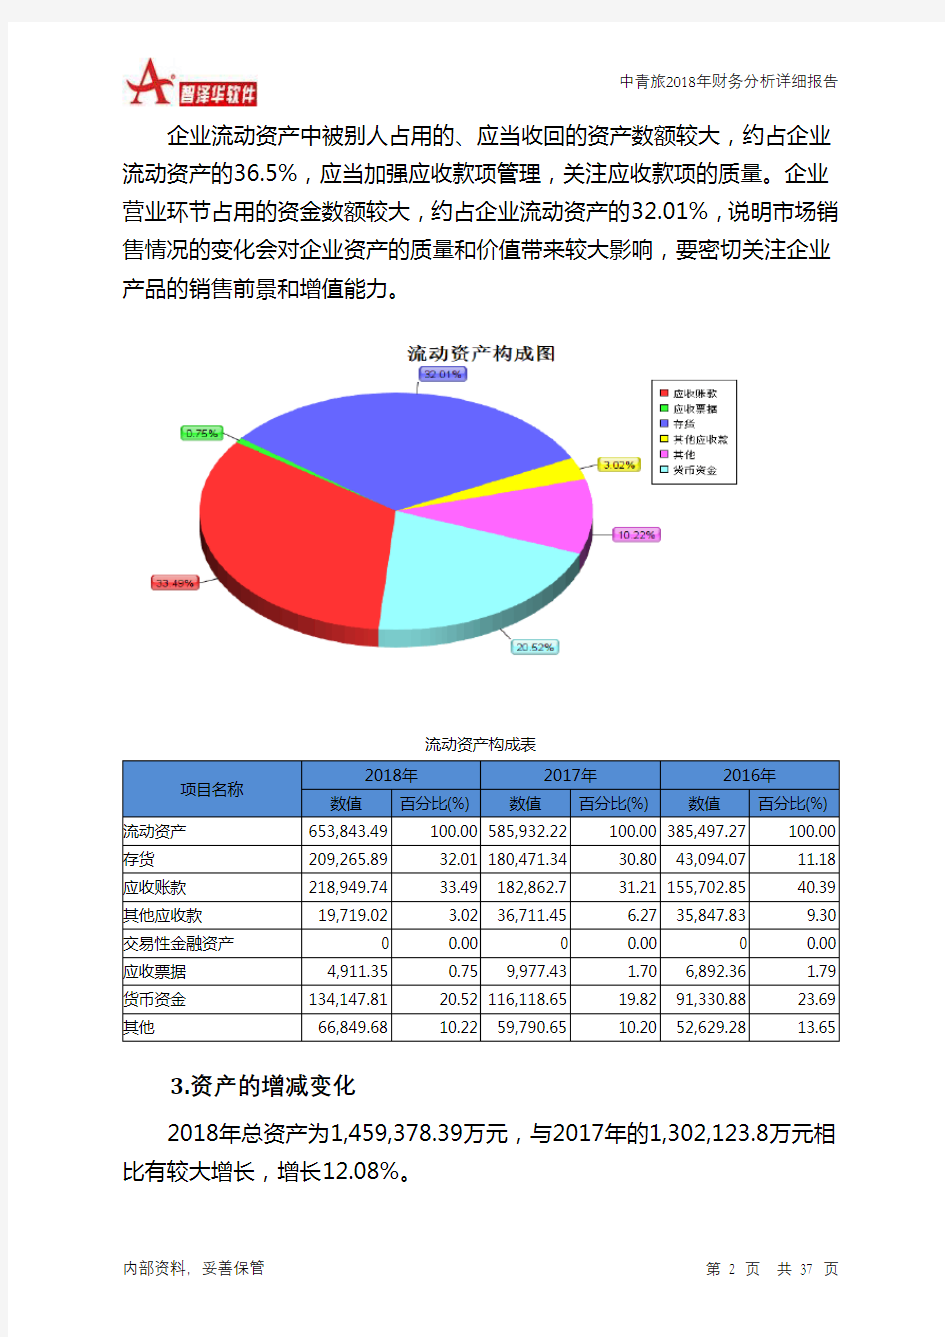 中青旅2018年财务分析详细报告-智泽华